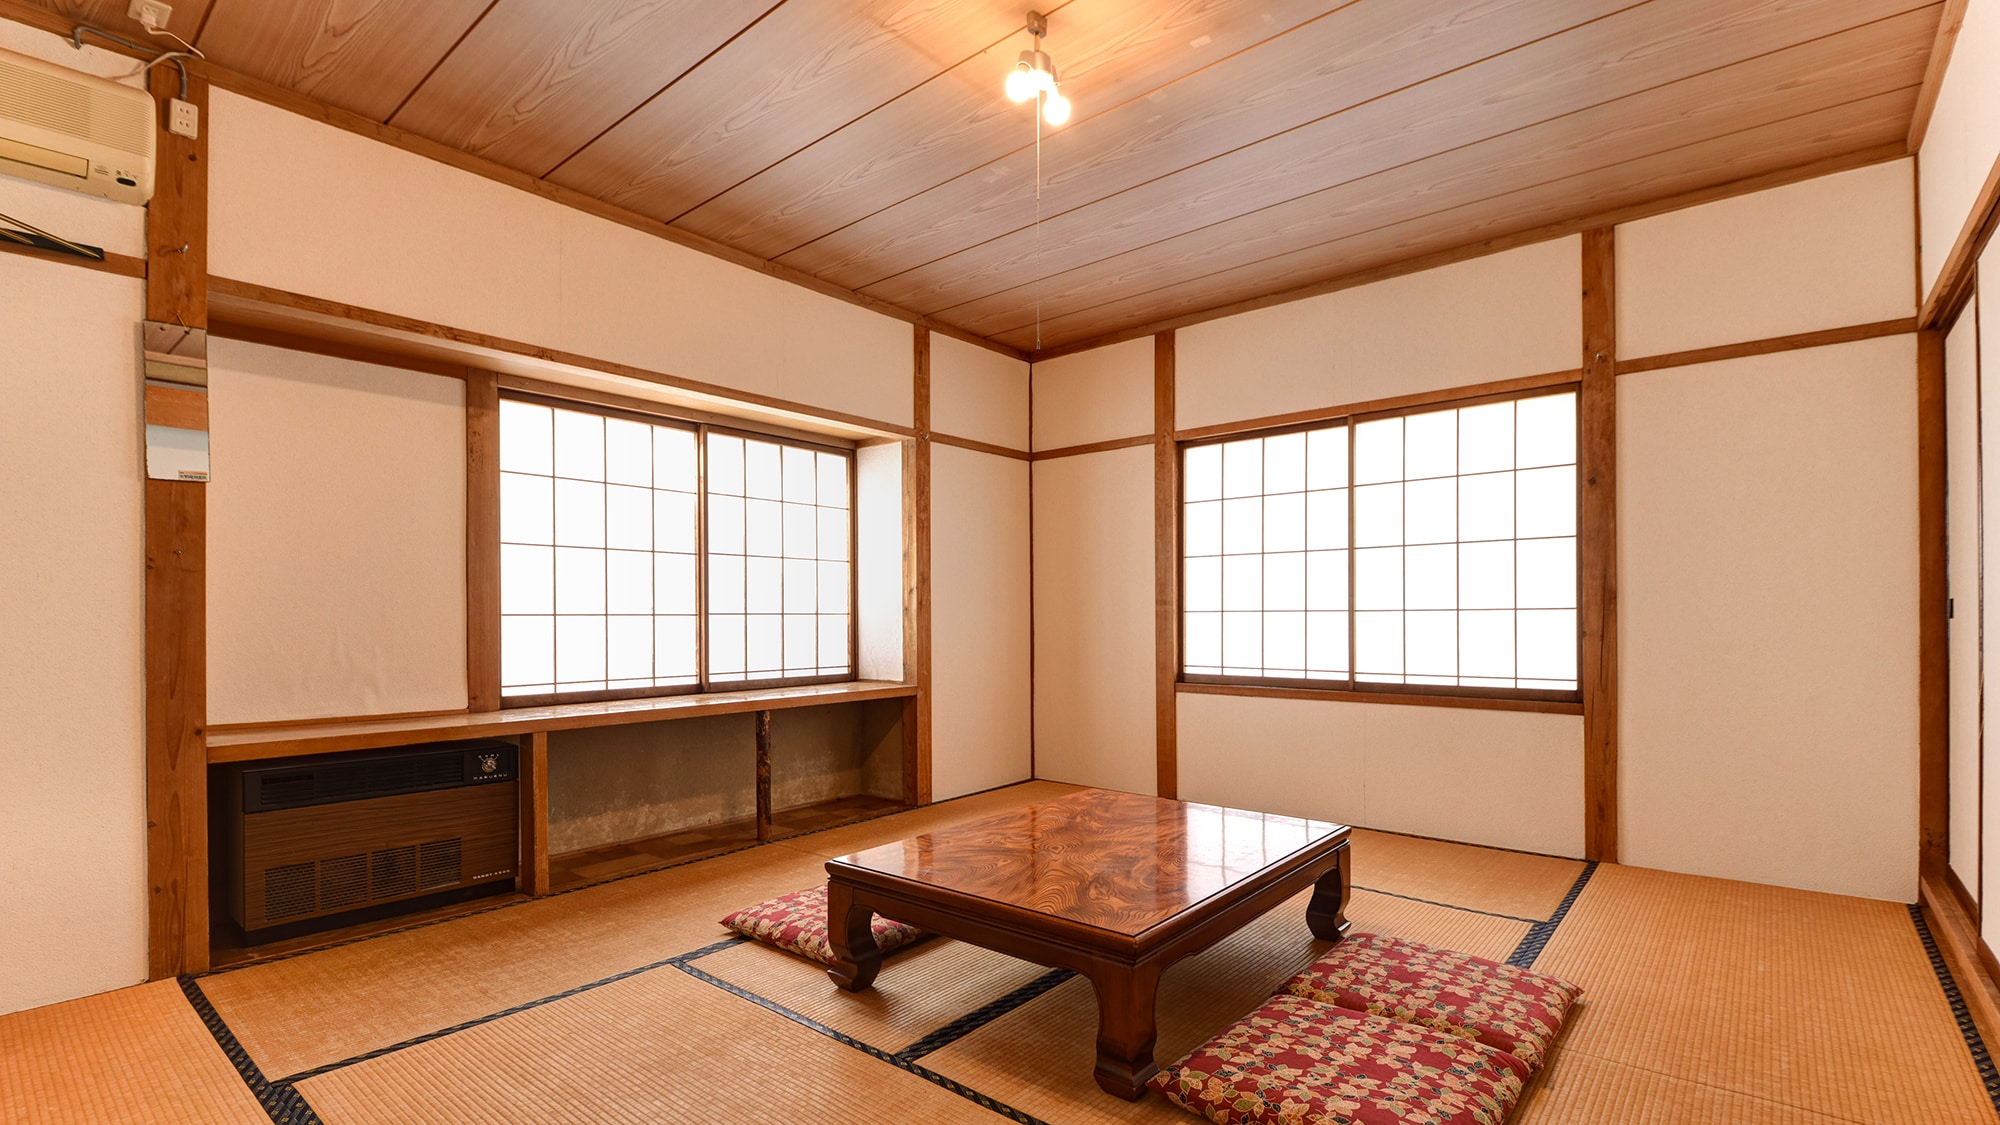 * Kamar bergaya Jepang di paviliun / Tidak ada bak mandi, toilet, atau fasilitas, jadi Anda bisa menginap dengan murah. Direkomendasikan untuk siswa dan kamp pelatihan